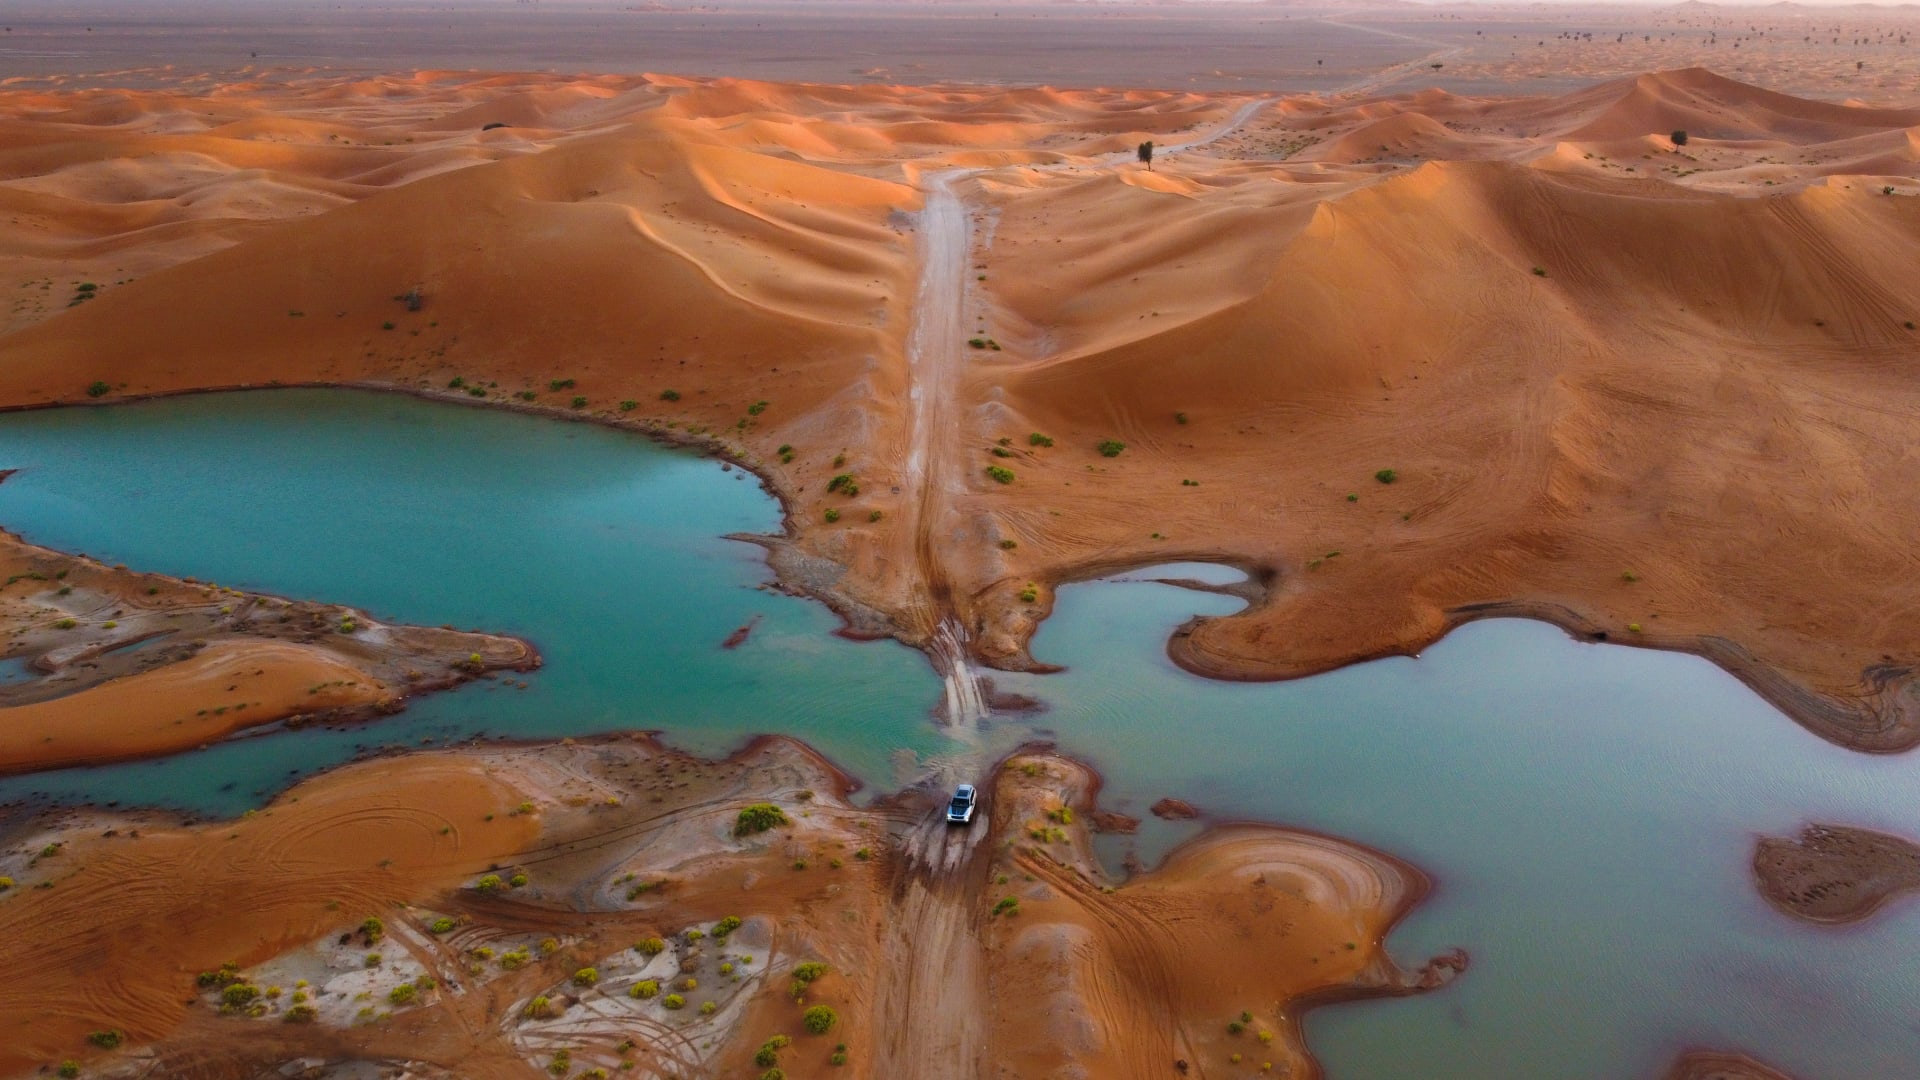 مشاهد بديعة في سلطنة عمان..إعصار "شاهين" يحول صحراء الربع الخالي إلى لوحة فنية